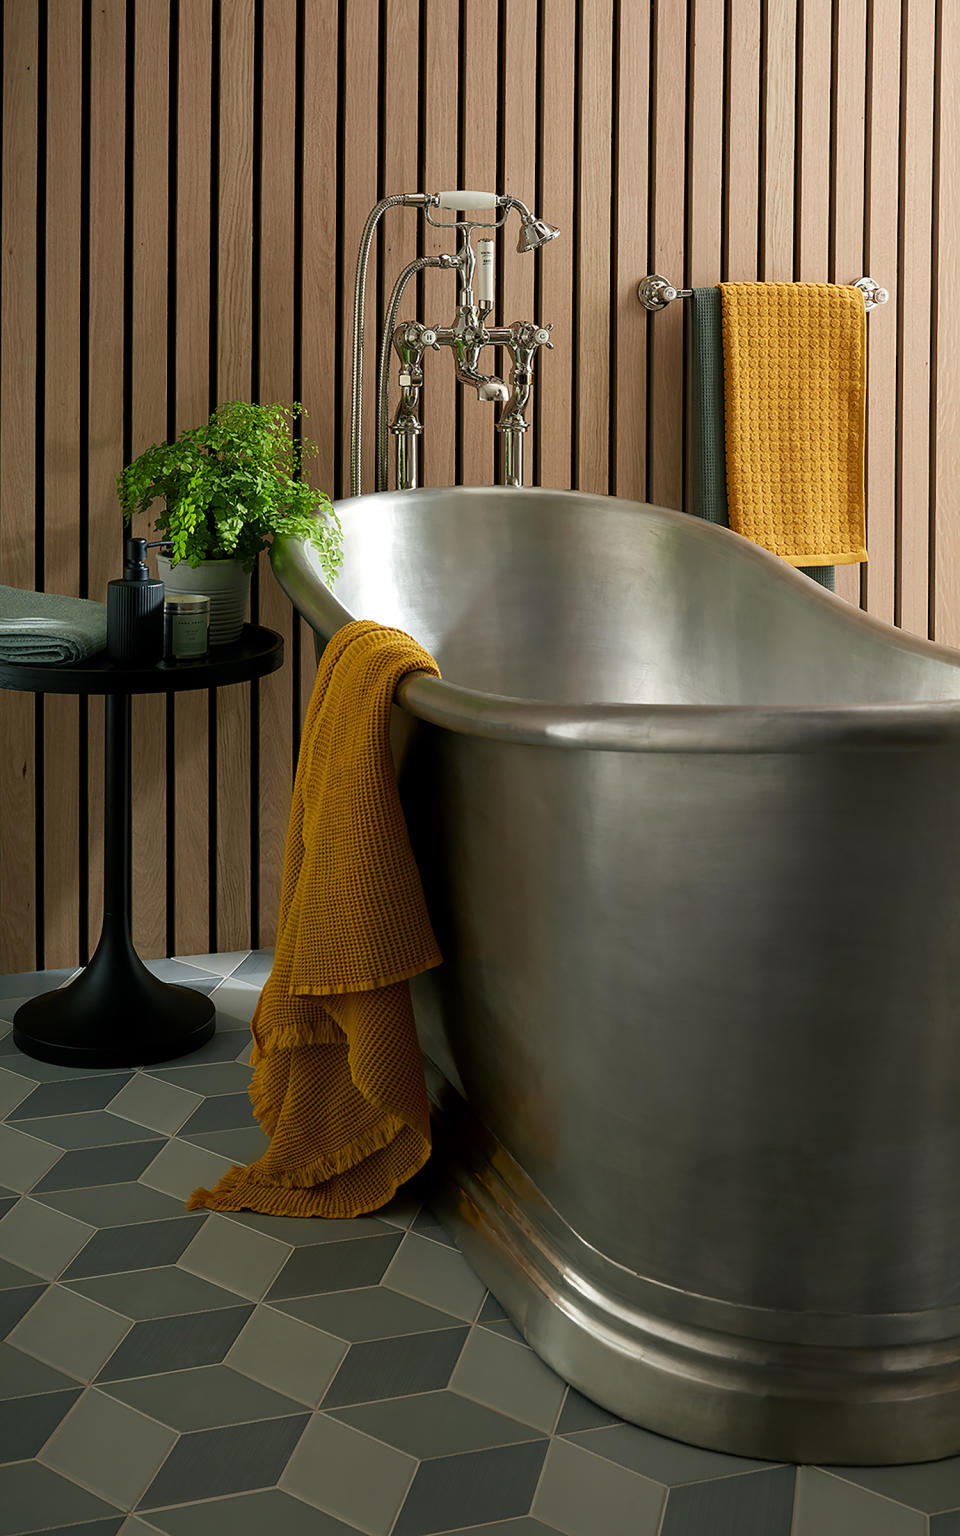 6. Choose a traditional bath tub